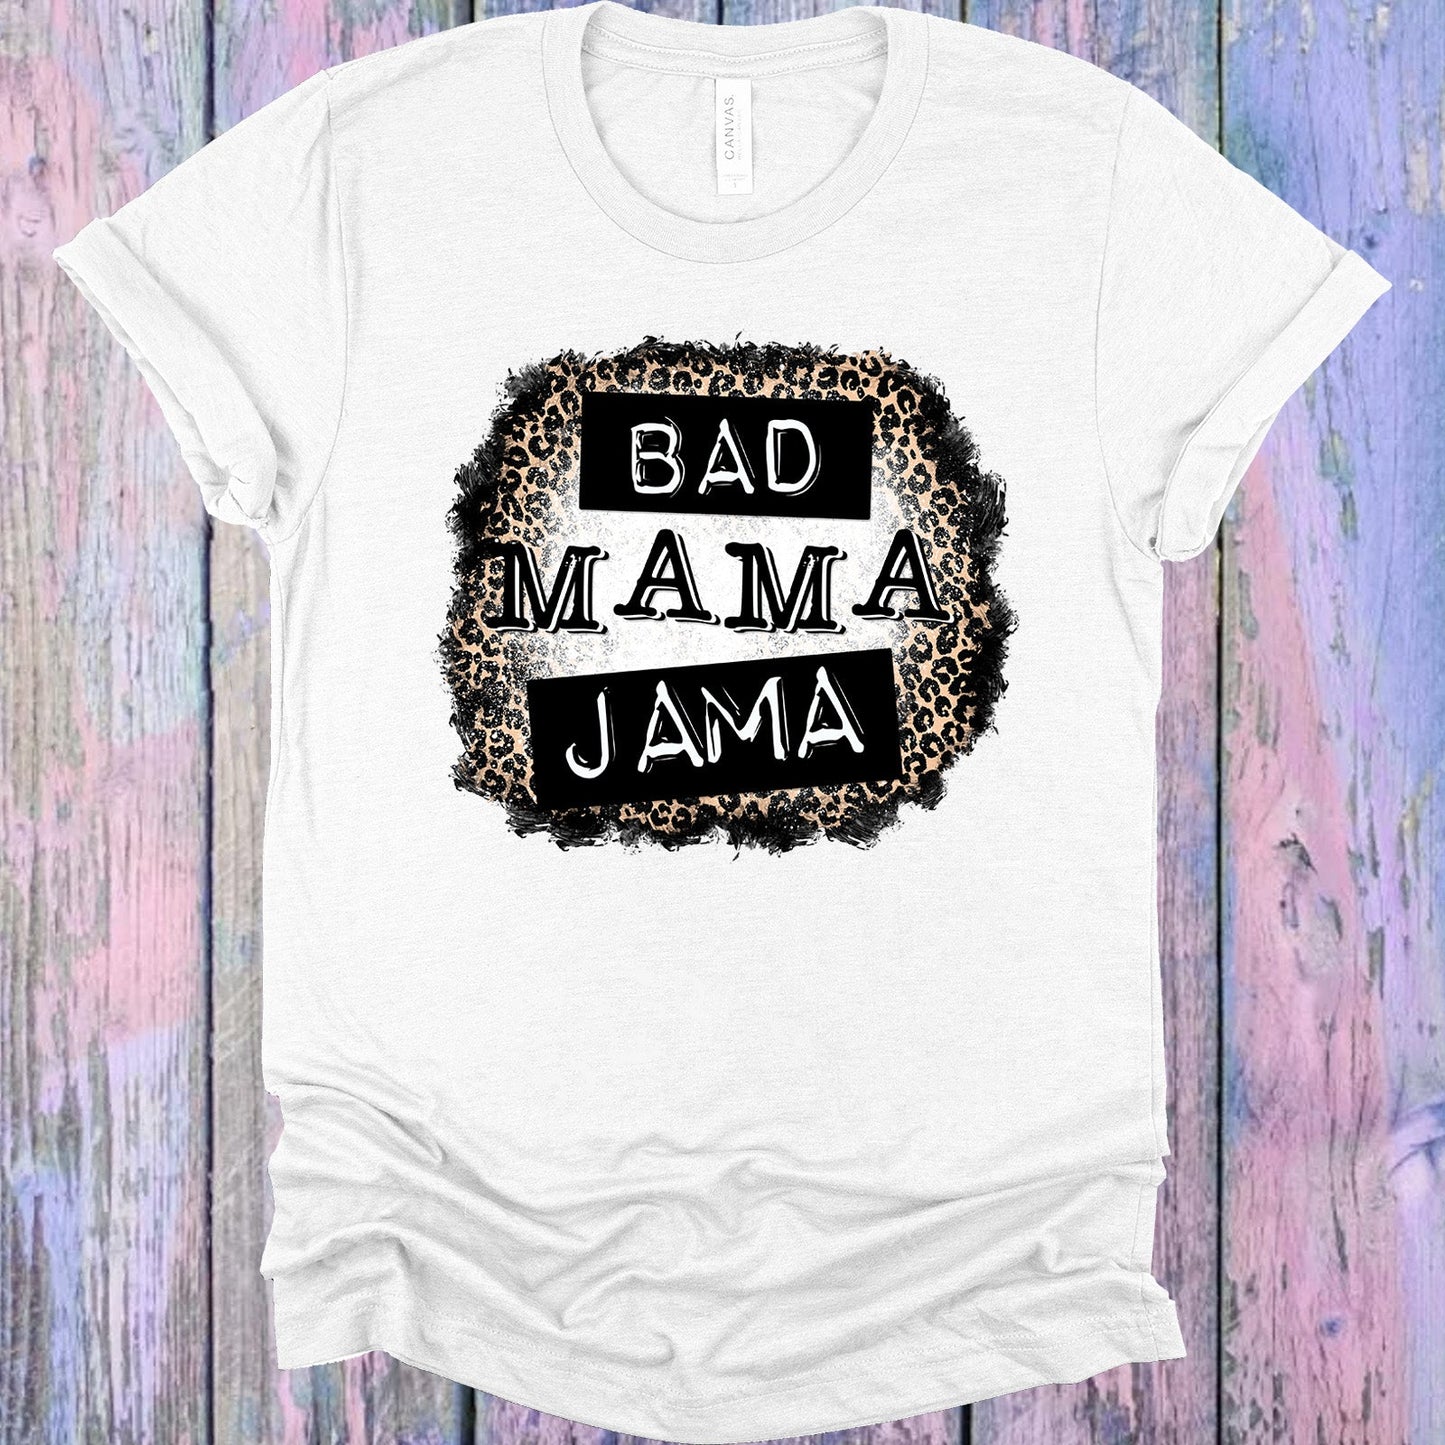 Bad Mama Jama Graphic Tee Graphic Tee